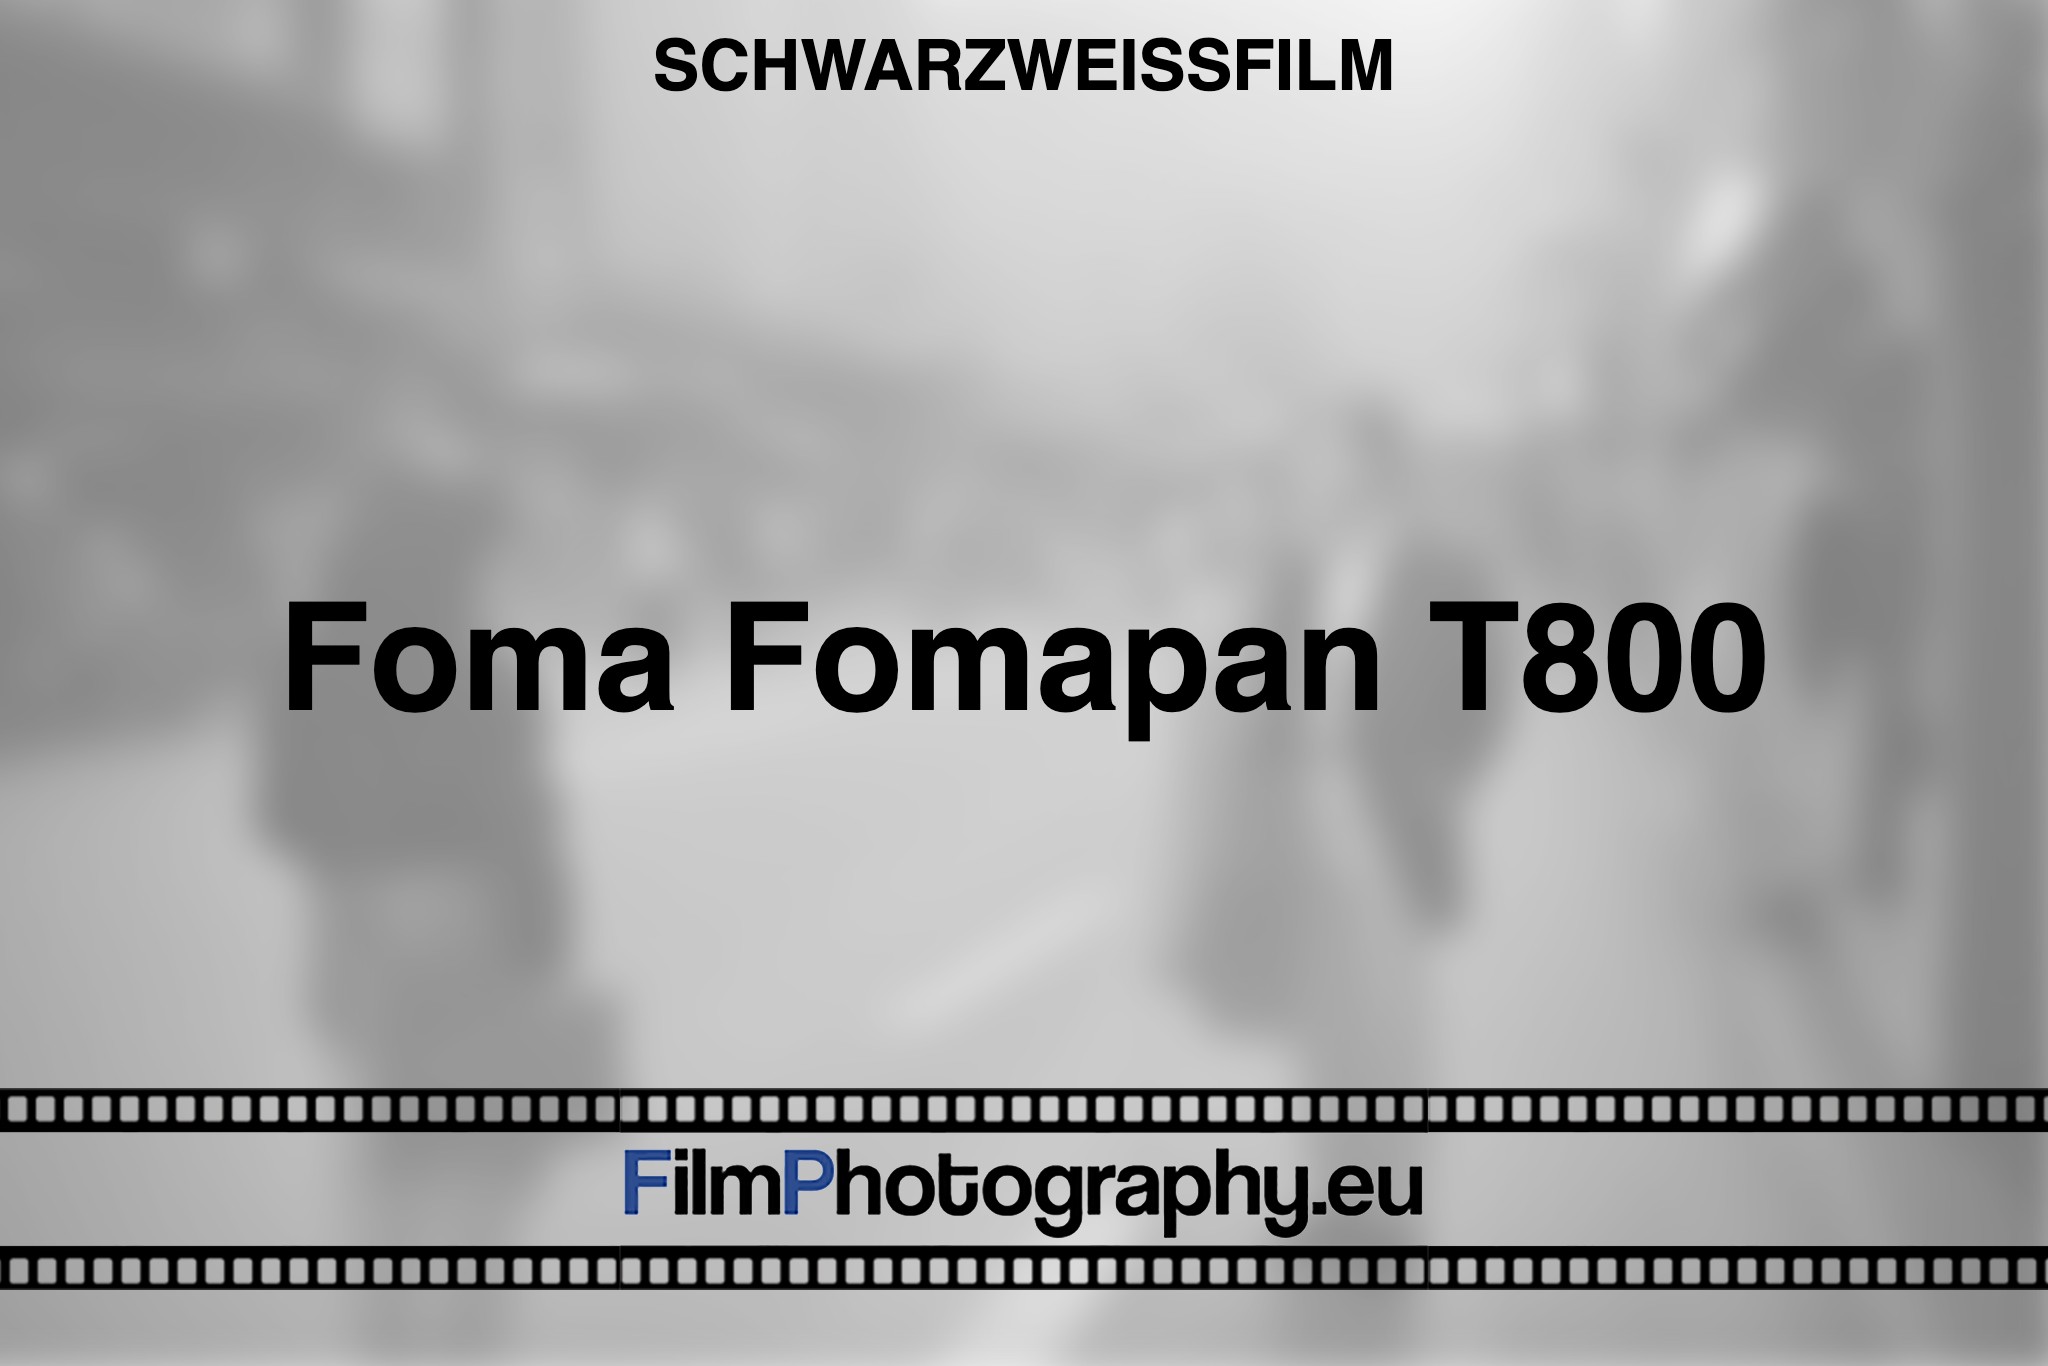 foma-fomapan-t800-schwarzweißfilm-bnv